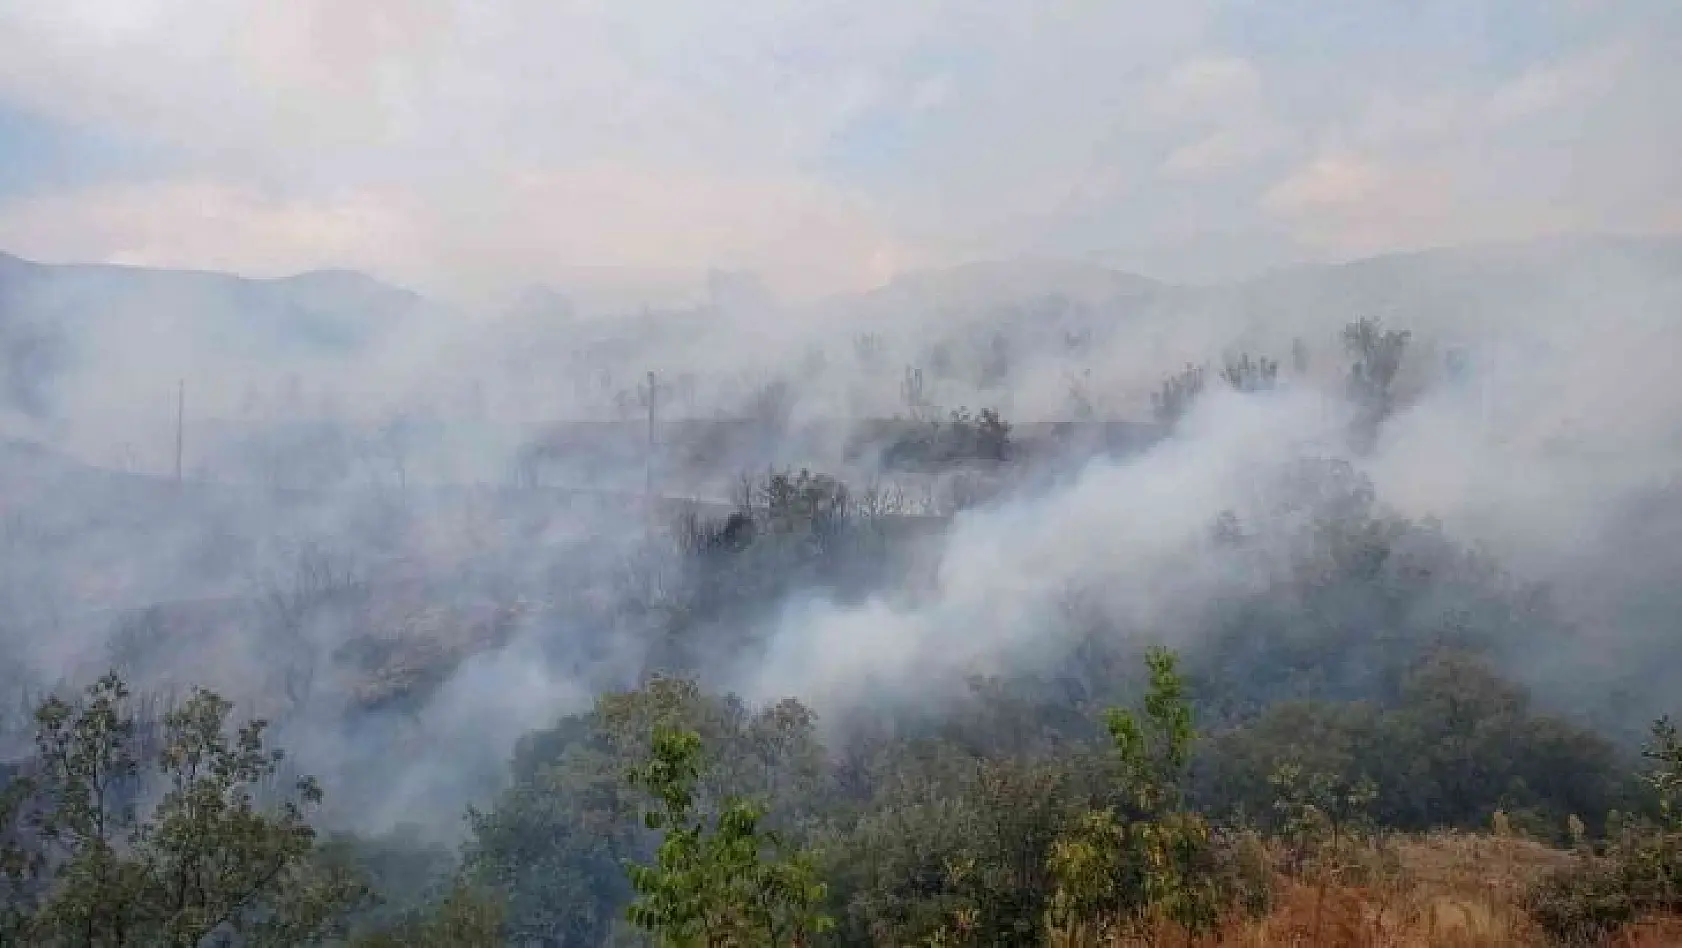 İzmir'de ormanlık alanda yangın